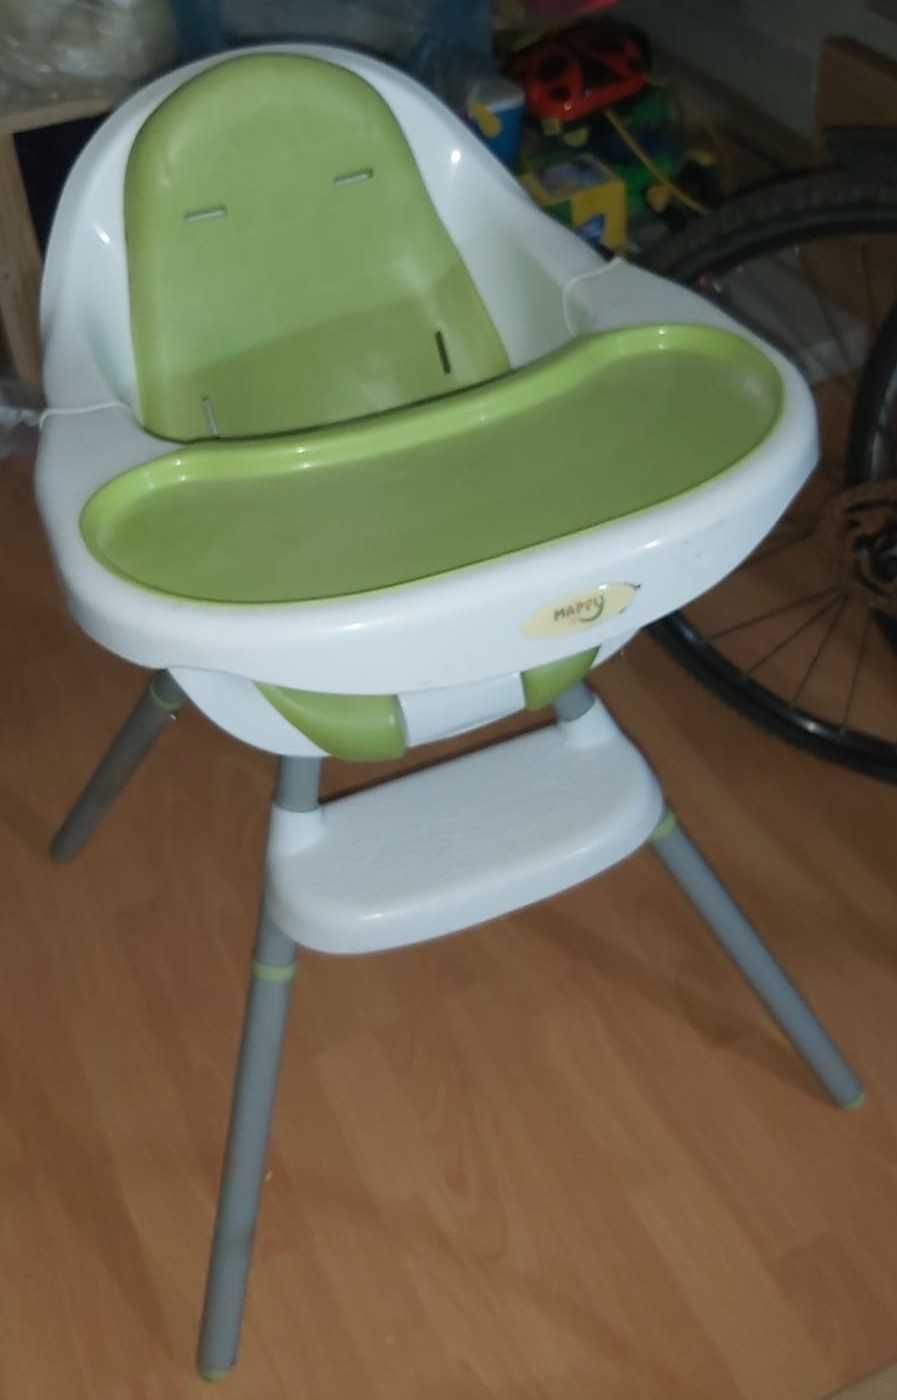 vand scaun pentru masa bucatarie copii - culoare verde alb gri